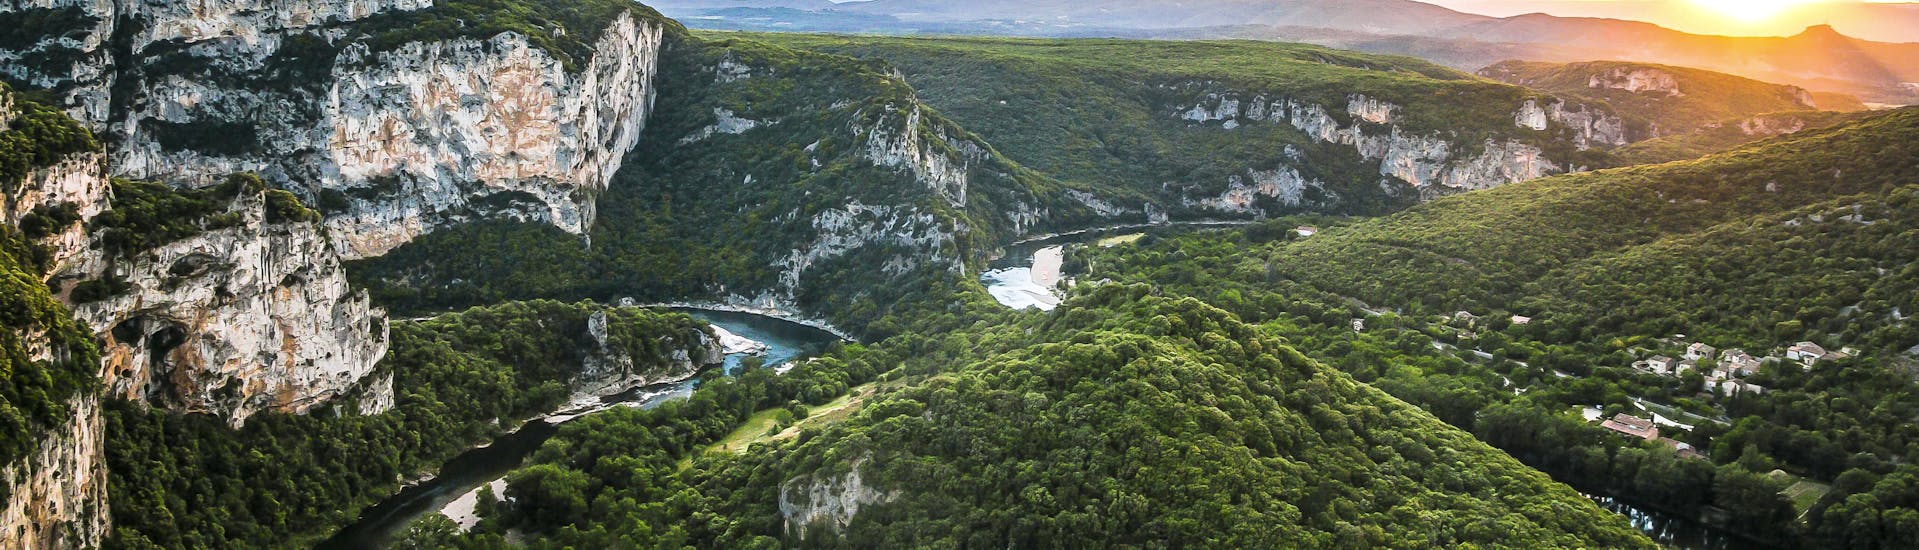 Gorges de l'Ardèche tijdens de 32 km kajak- en kanoverhuur in de Ardèche - 2 dagen met bivak met Aigue-Vive.